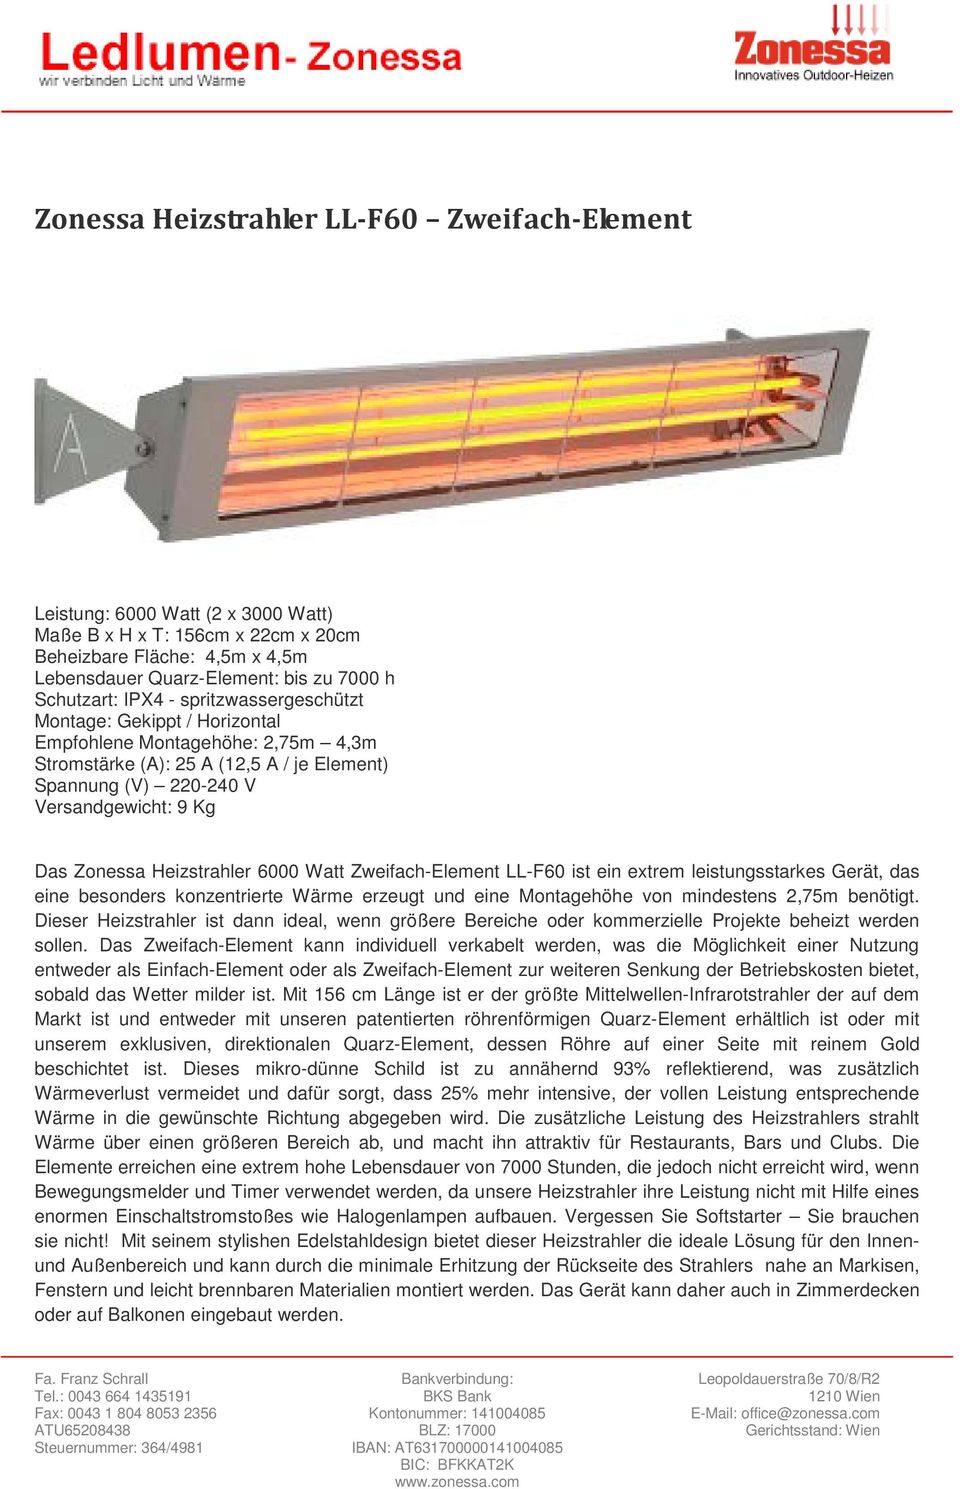 Heizstrahler 6000 Watt Zweifach-Element LL-F60 ist ein extrem leistungsstarkes Gerät, das eine besonders konzentrierte Wärme erzeugt und eine Montagehöhe von mindestens 2,75m benötigt.